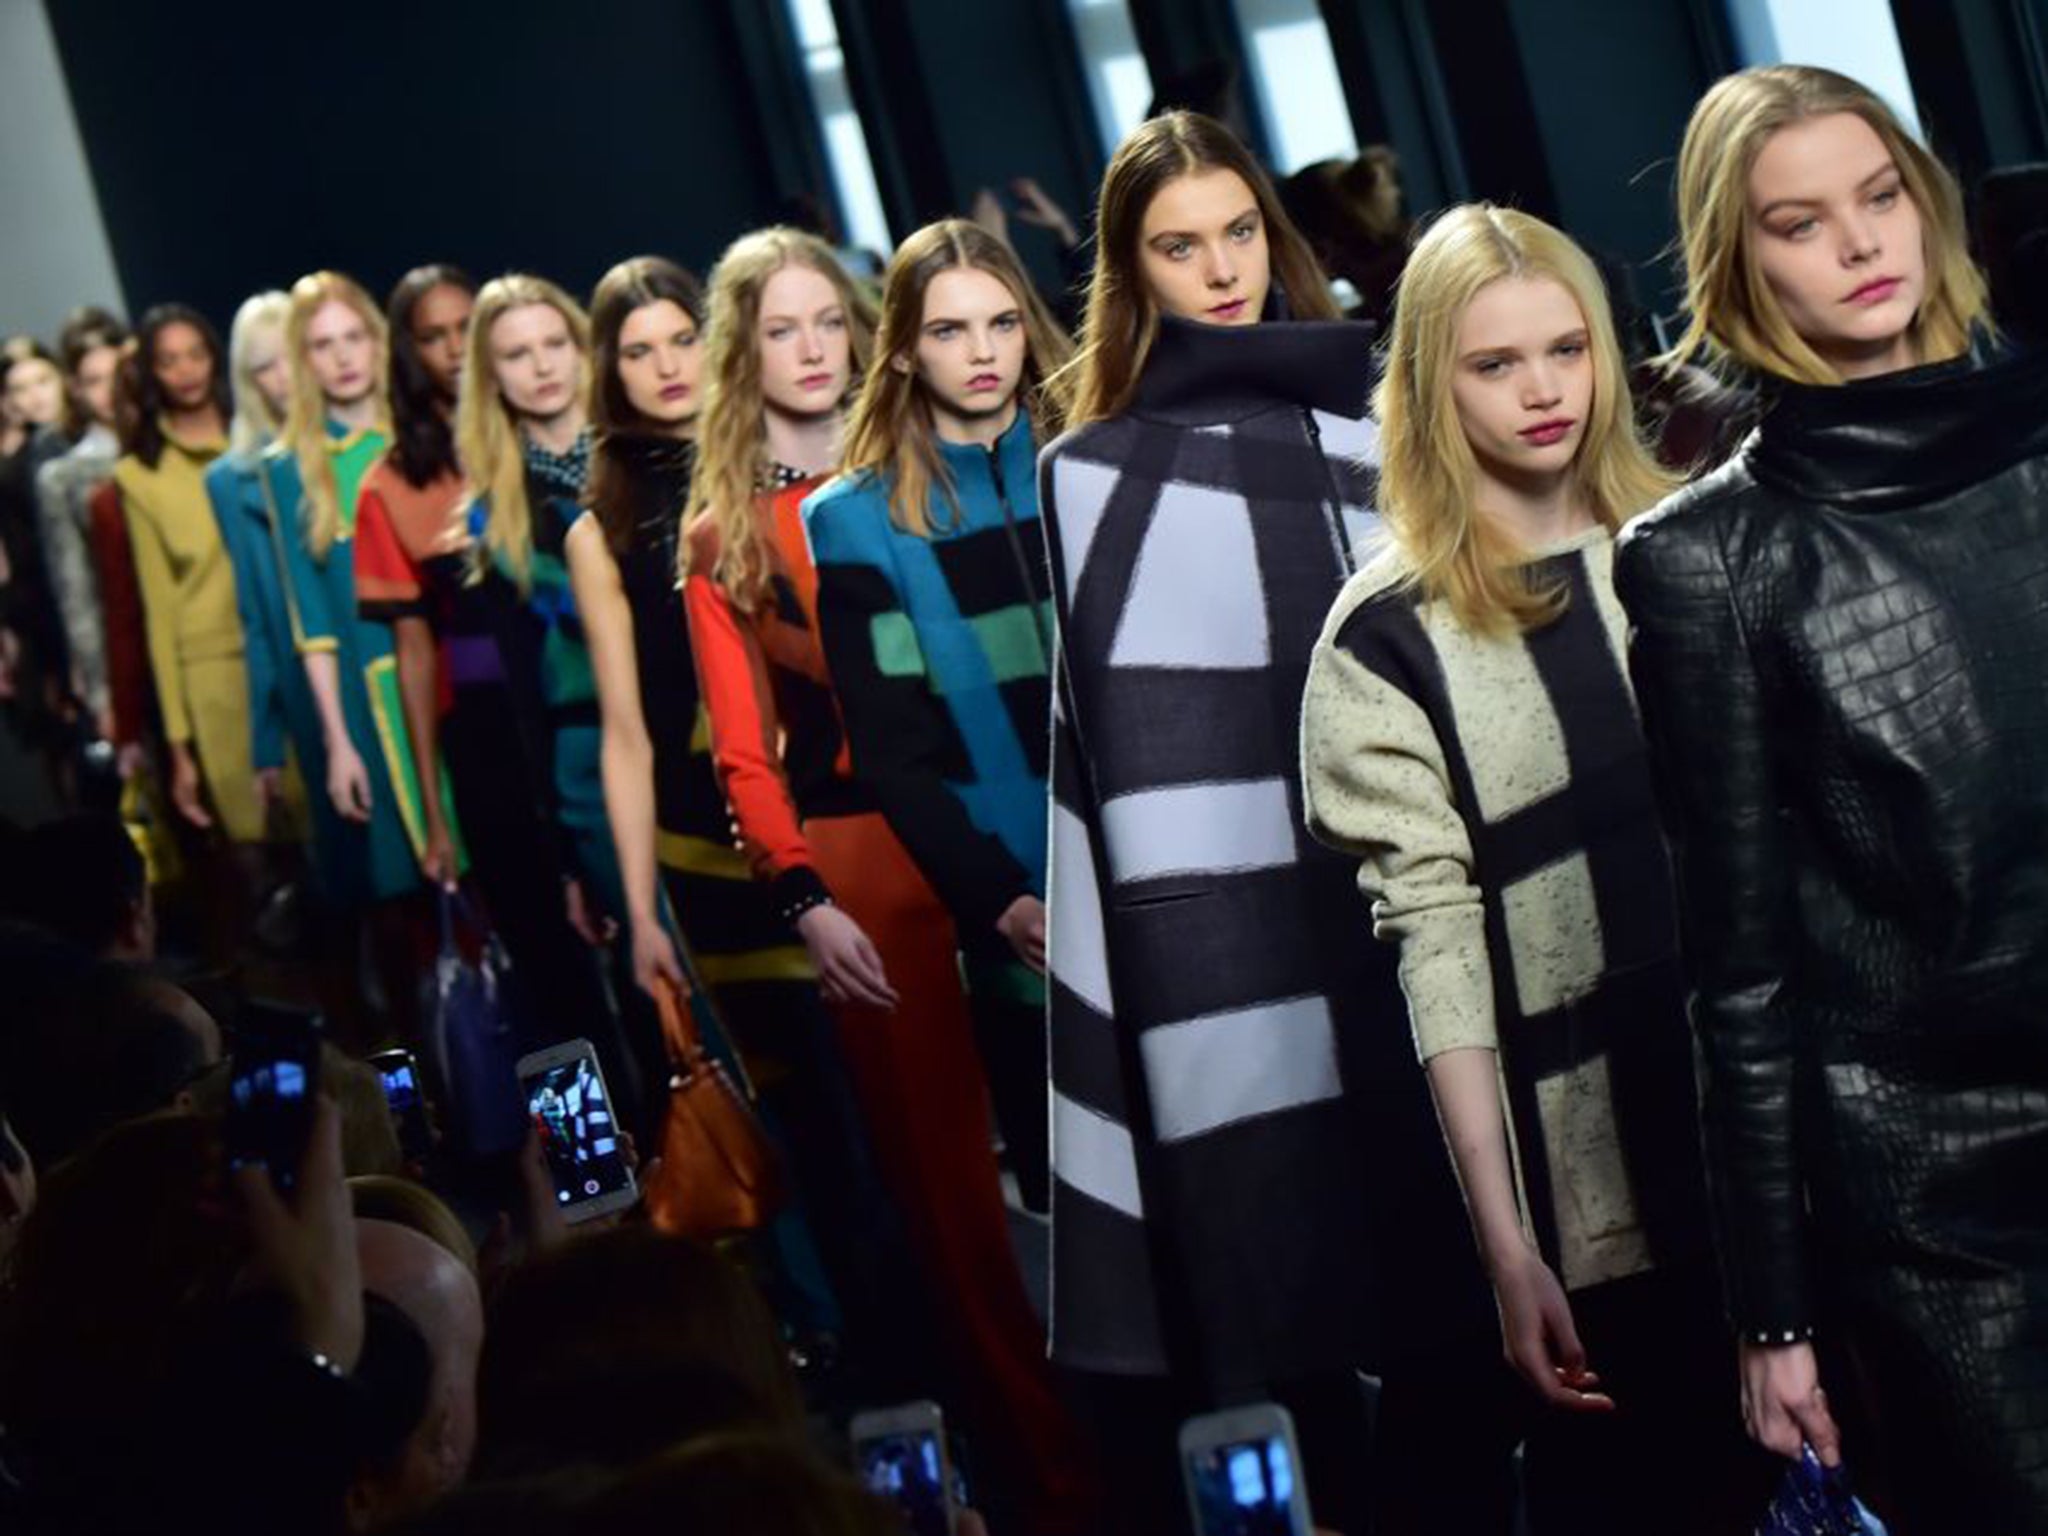 Milan Fashion Week 2015:Bottega Veneta review - Fashion that's a bit ...